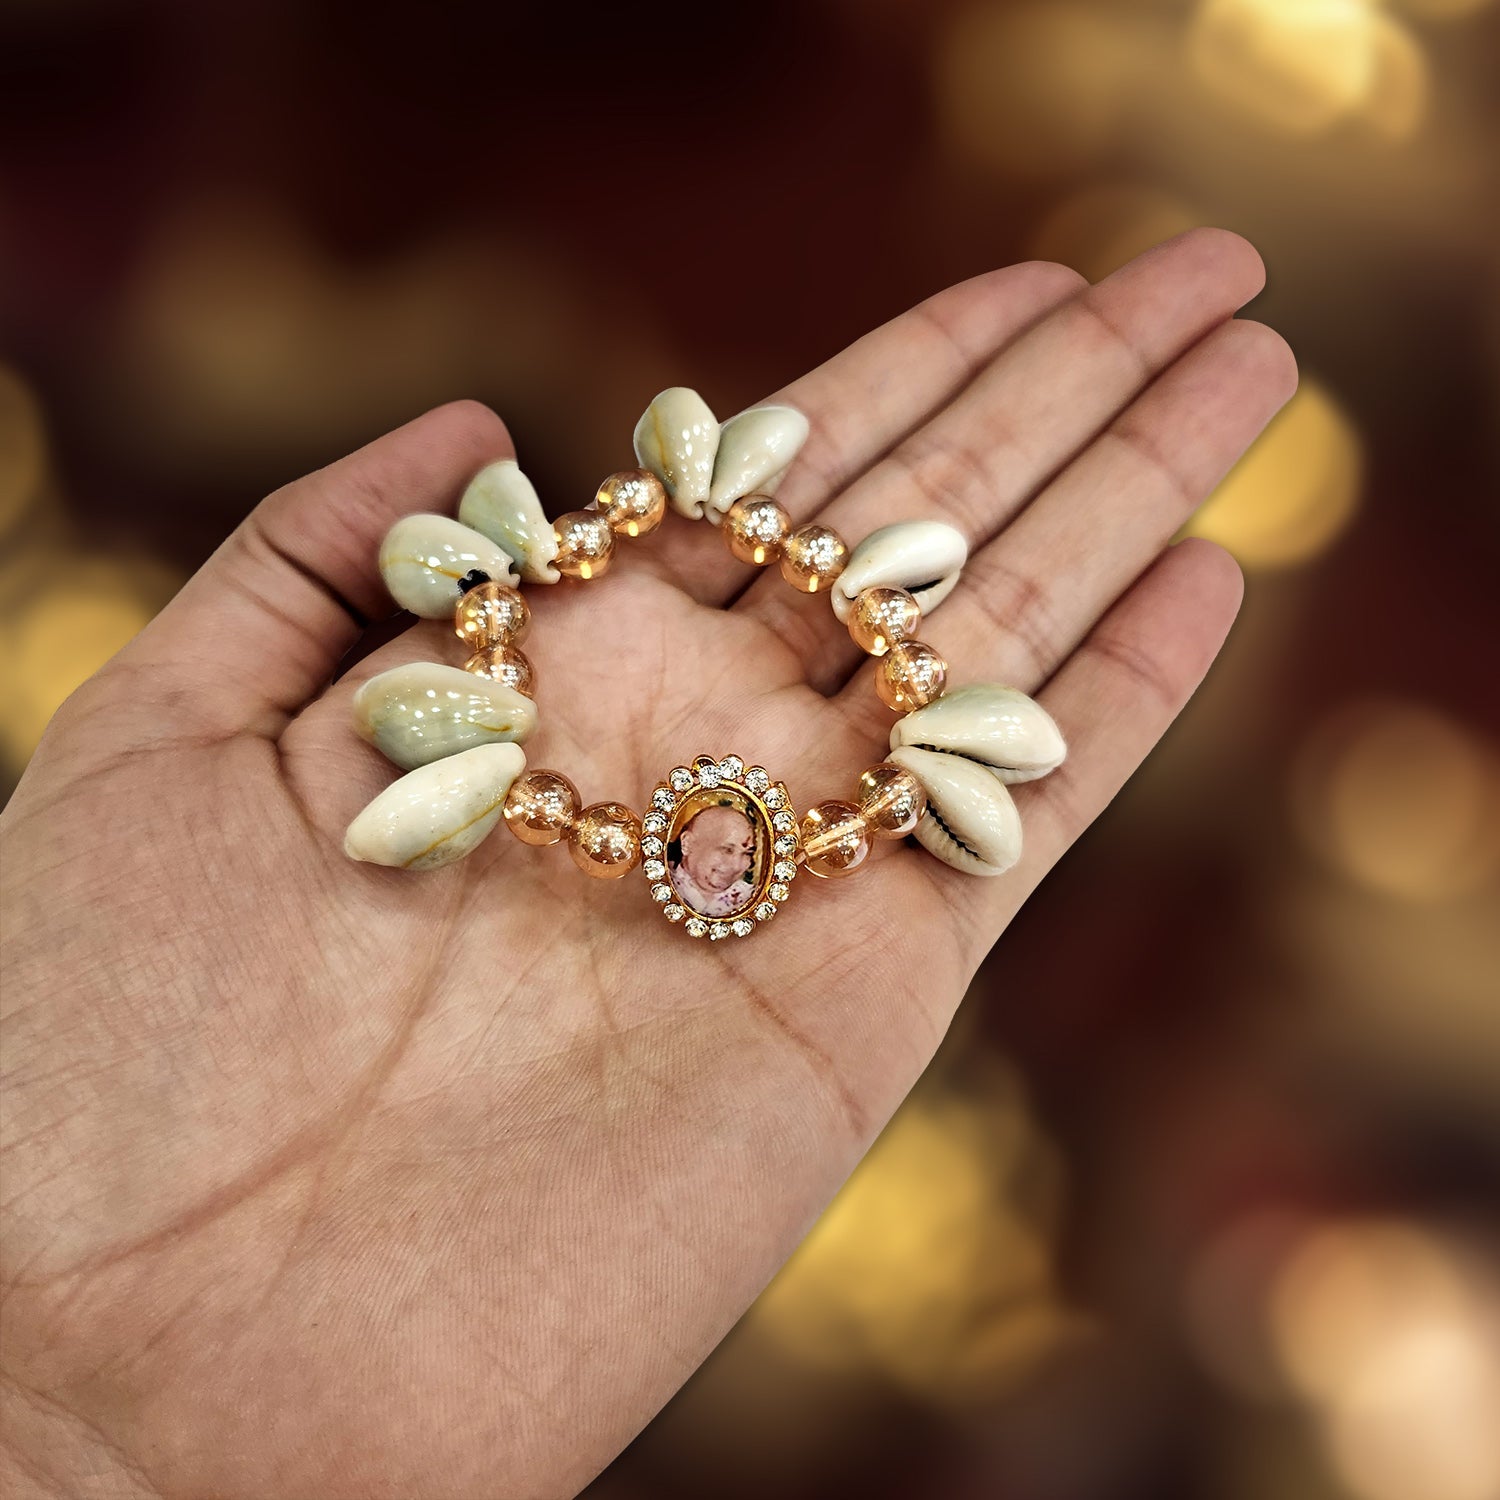 Black Jai Guru Ji Rounded Pearl Bracelet | Satvikstore.in – satvikstore.in